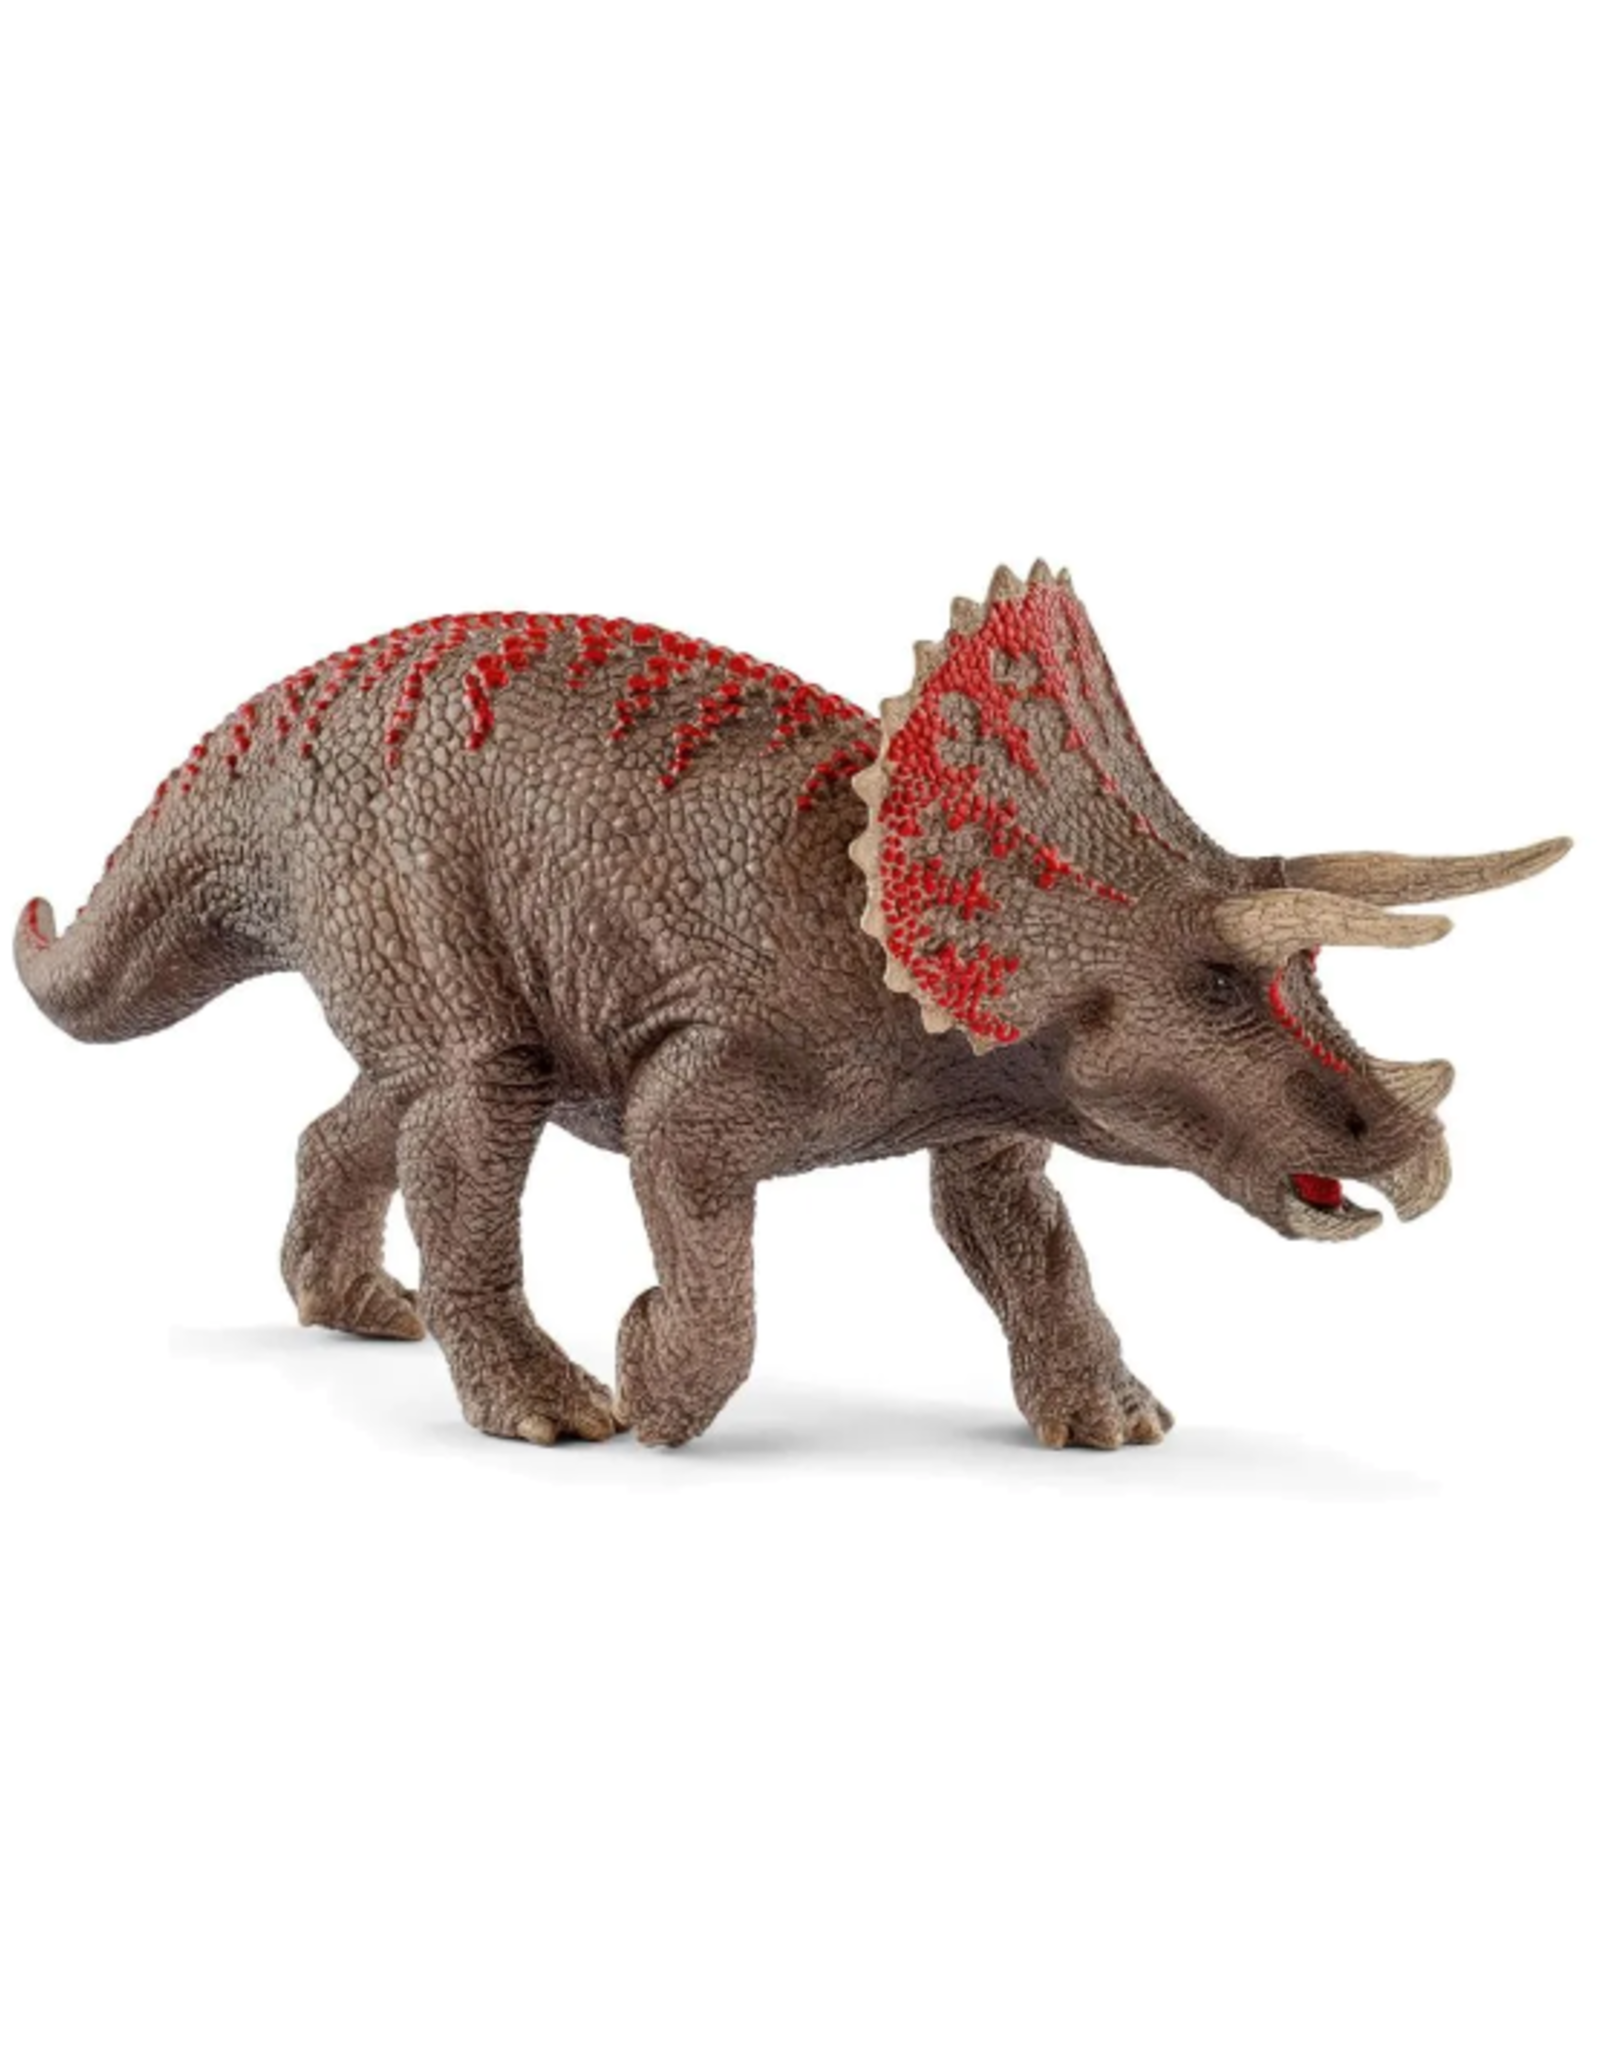 Schleich Schleich - Dinosaur - 15000 - Triceratops